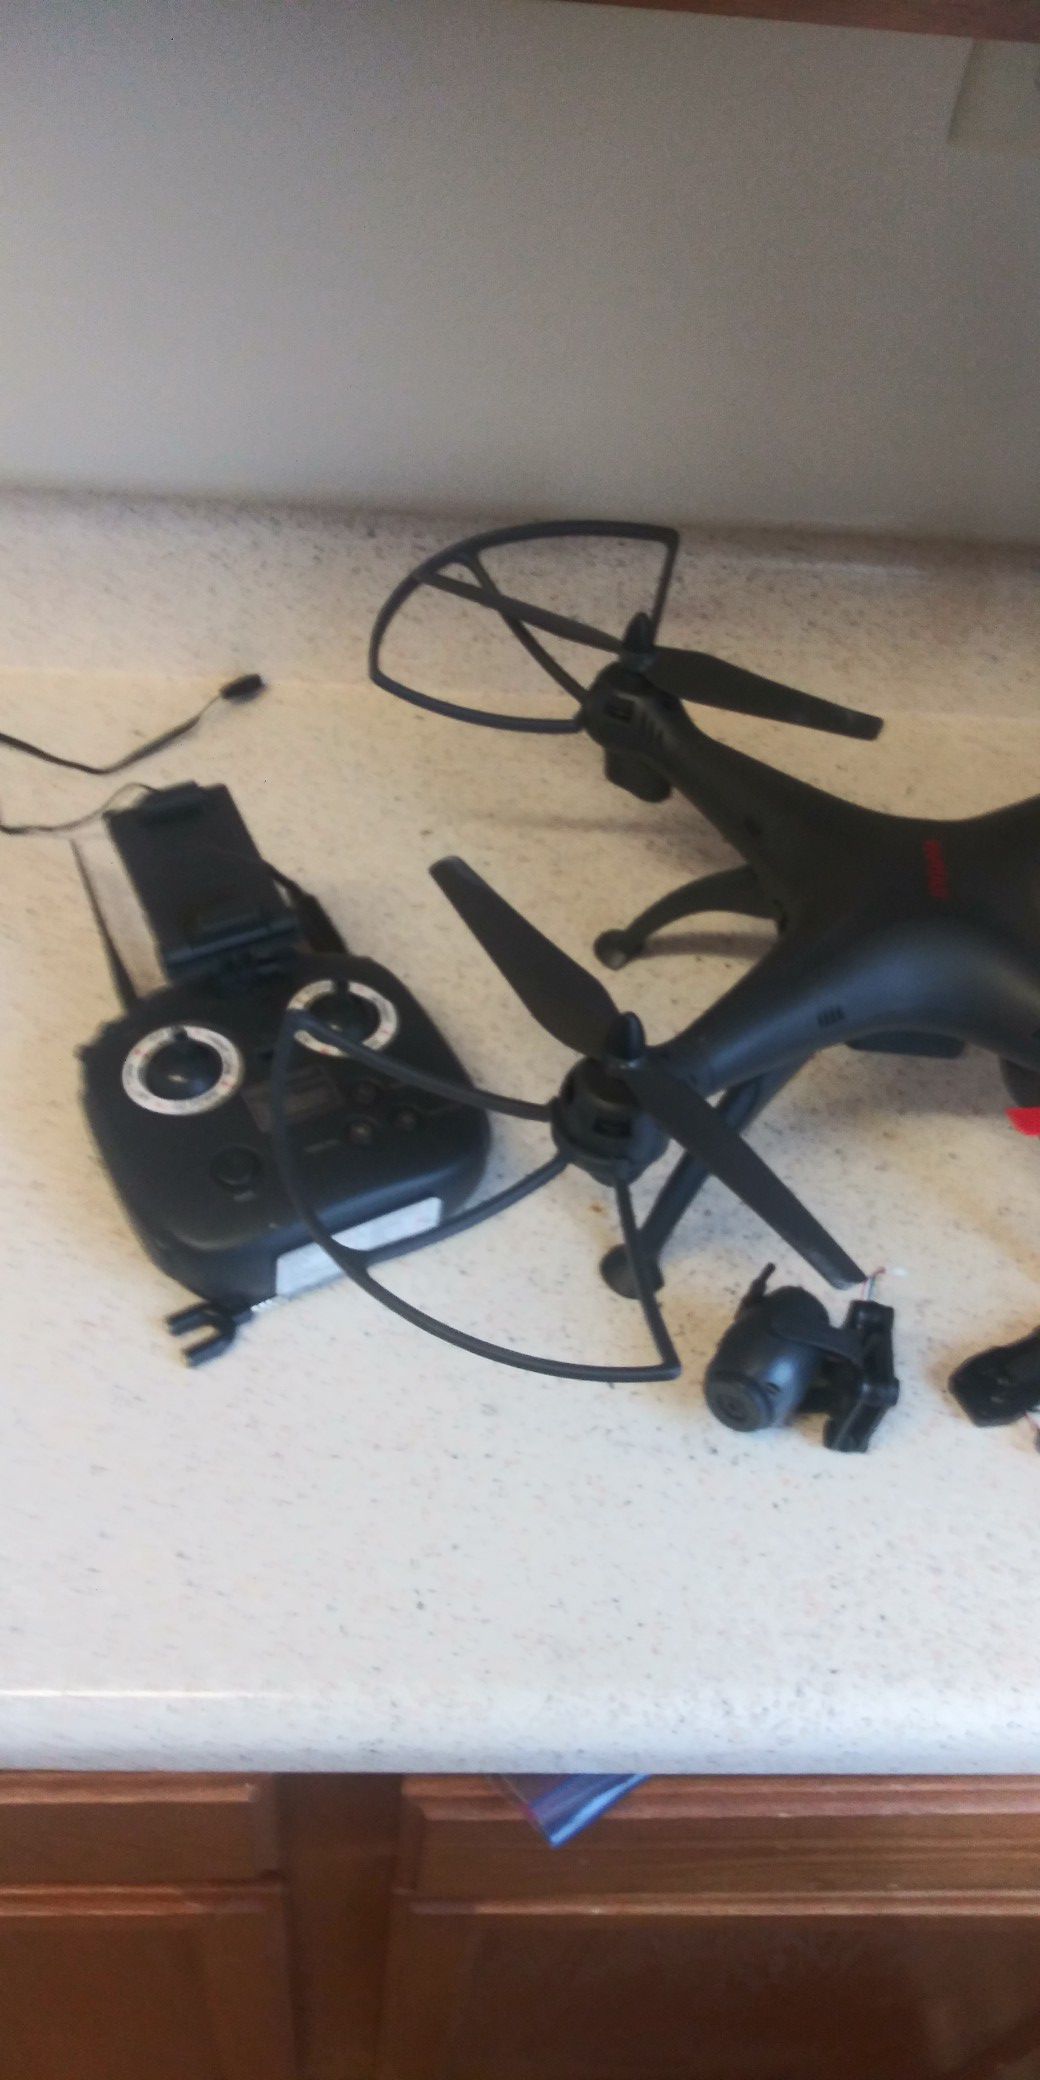 Viviar 1080p drone